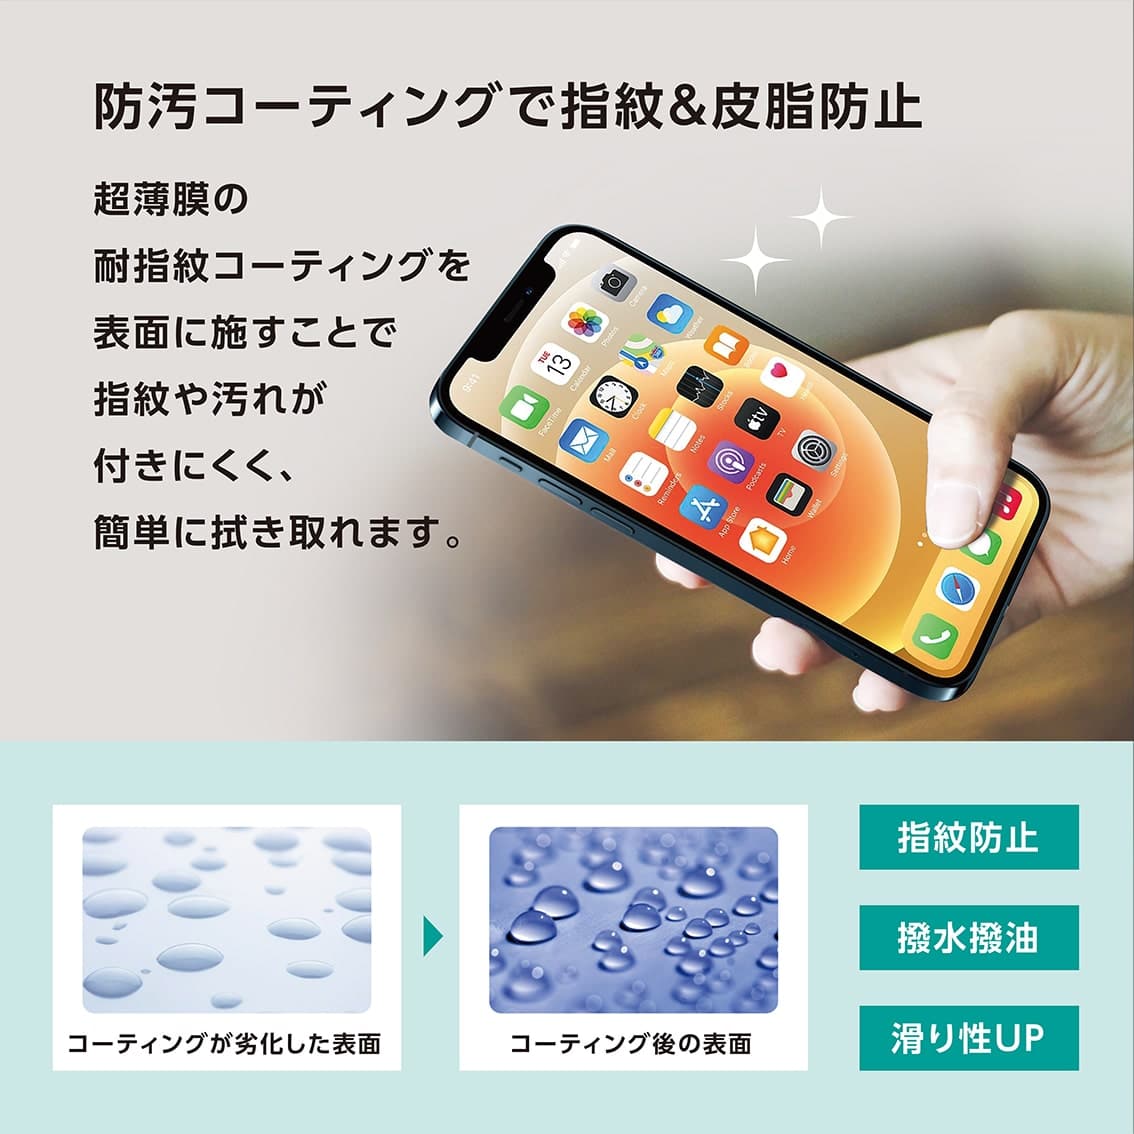 新型 iPhone13 mini 対応 0.25mm 角割れ防止 PETフレーム付き ガラスフィルム クリア アンチグレアブルーライトカット ブルーライトカット 覗き見防止 iPhone 2021年モデル 5.4インチ